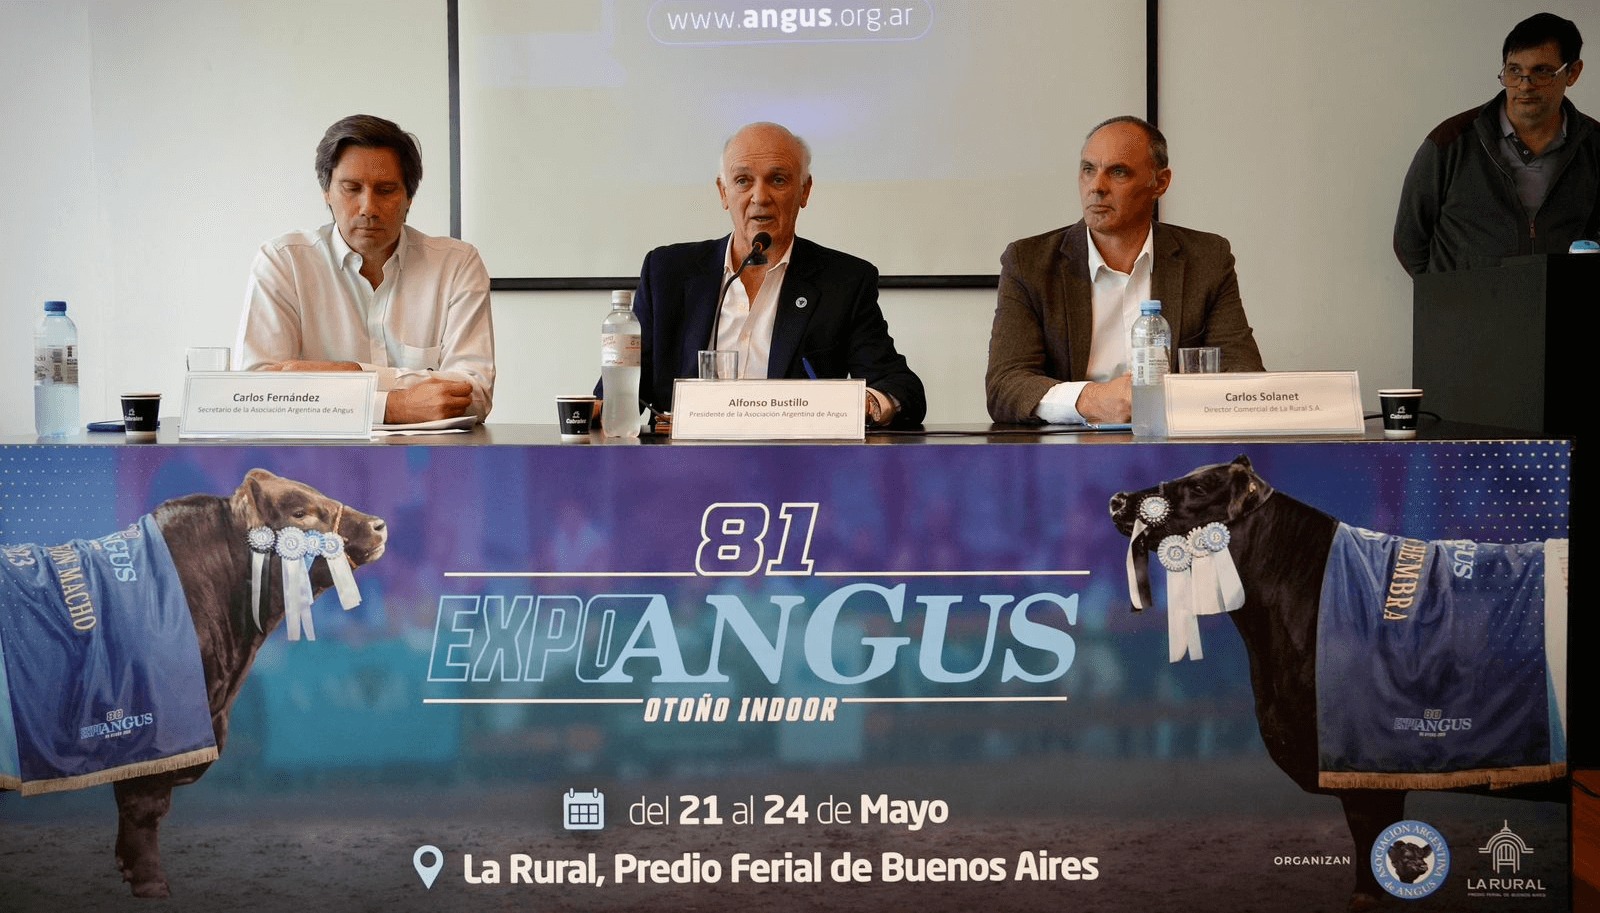 Alfonso Bustillo aseguró que la Expo de Otoño será una muestra donde toda la cadena Angus va a estar presente” del 21 al 24 de mayo en Palermo